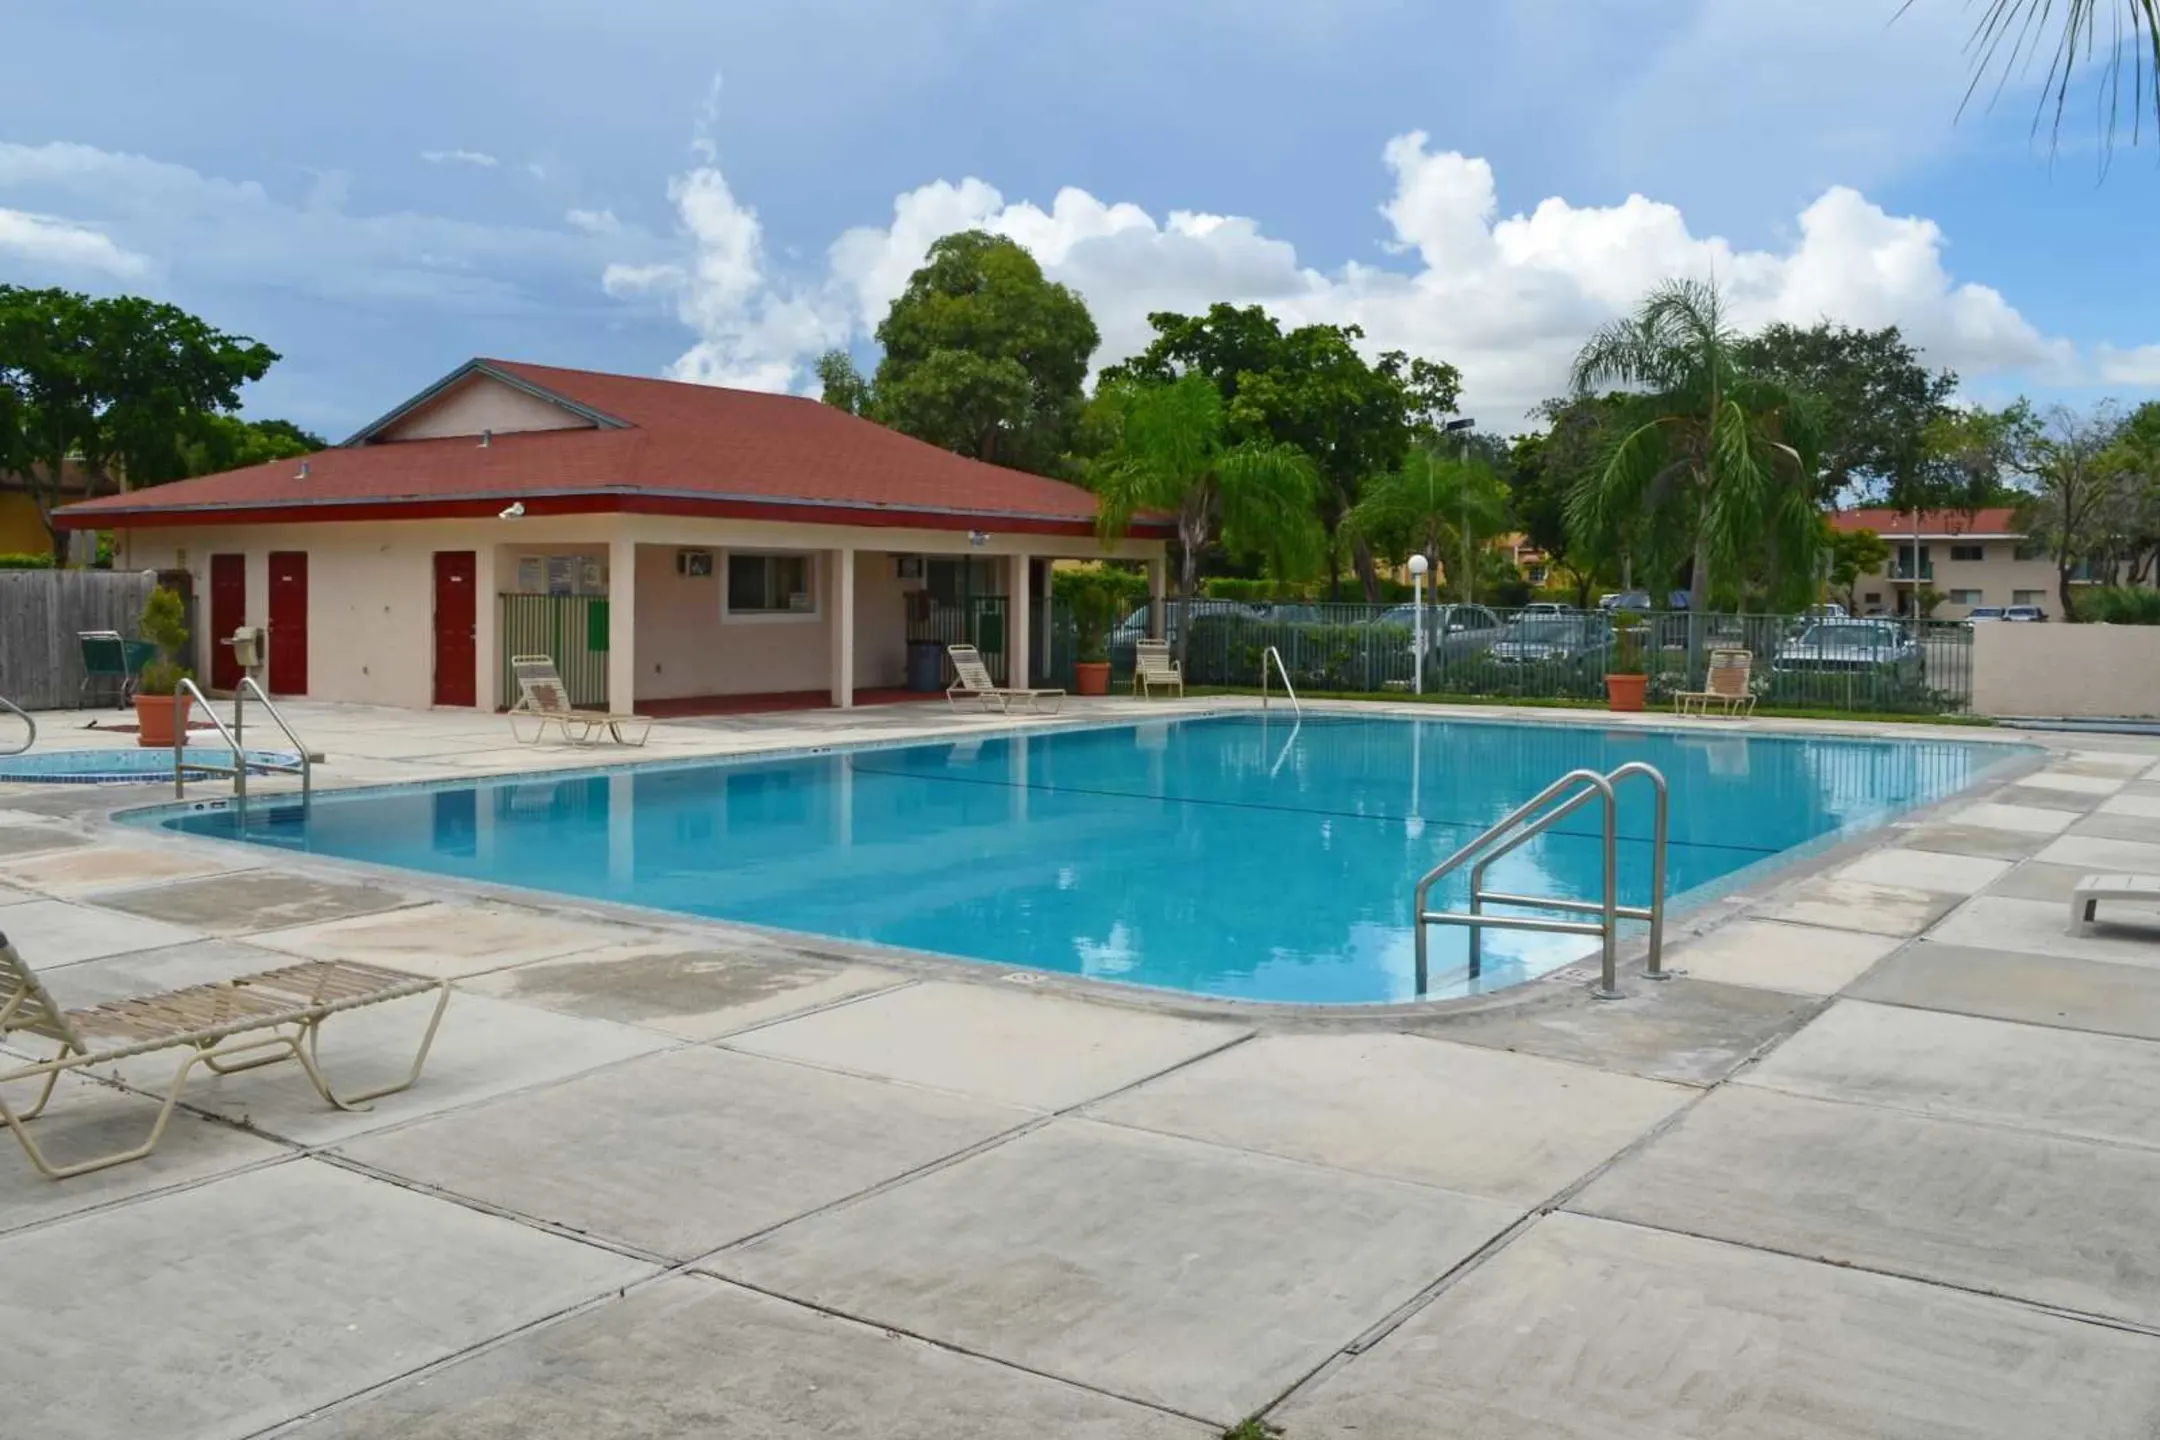 Pool - Palm Island Club - Tamarac, FL